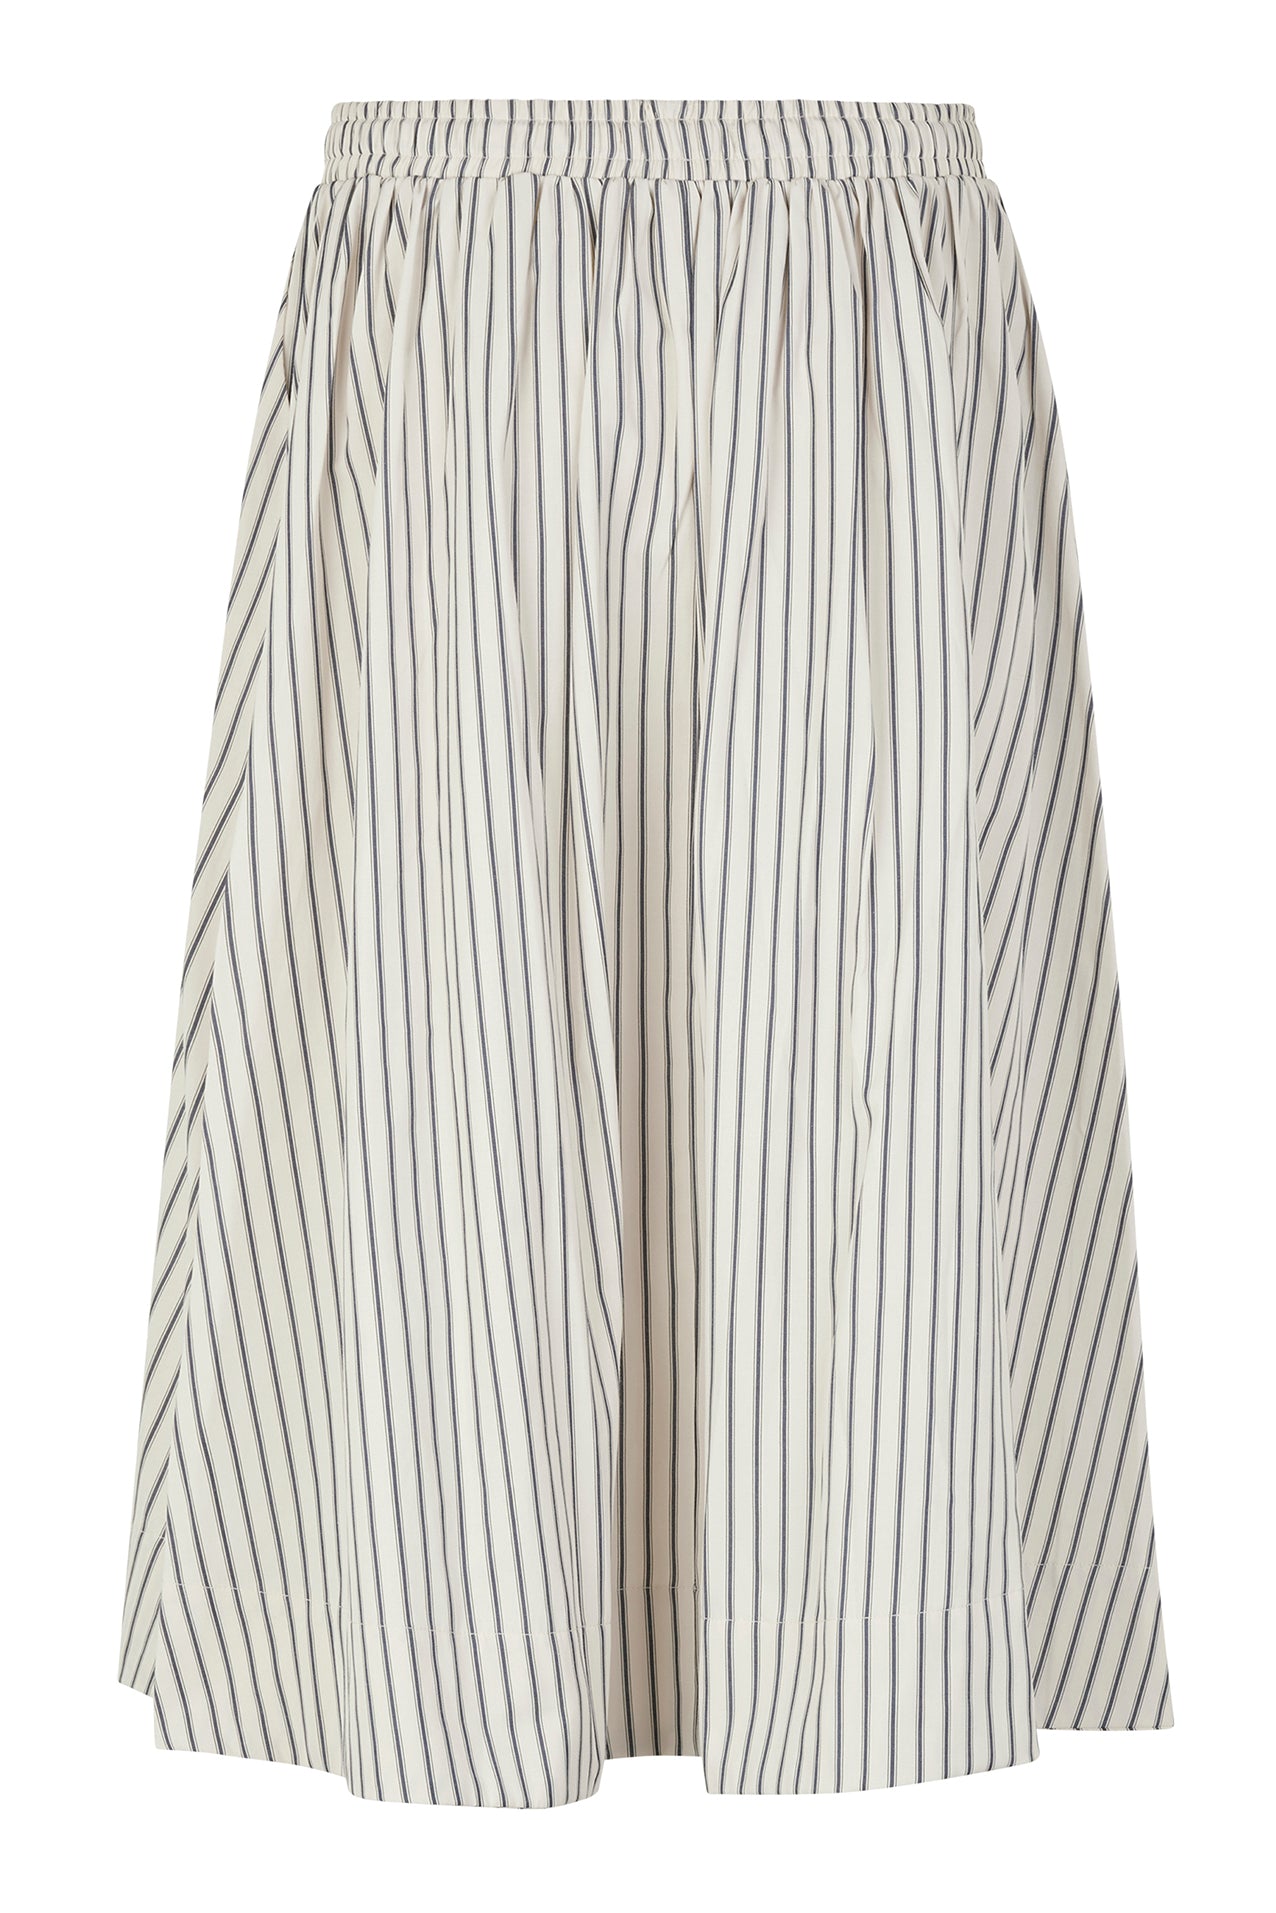 Lollys Laundry BristolLL Midi Skirt Skirt 80 Stripe